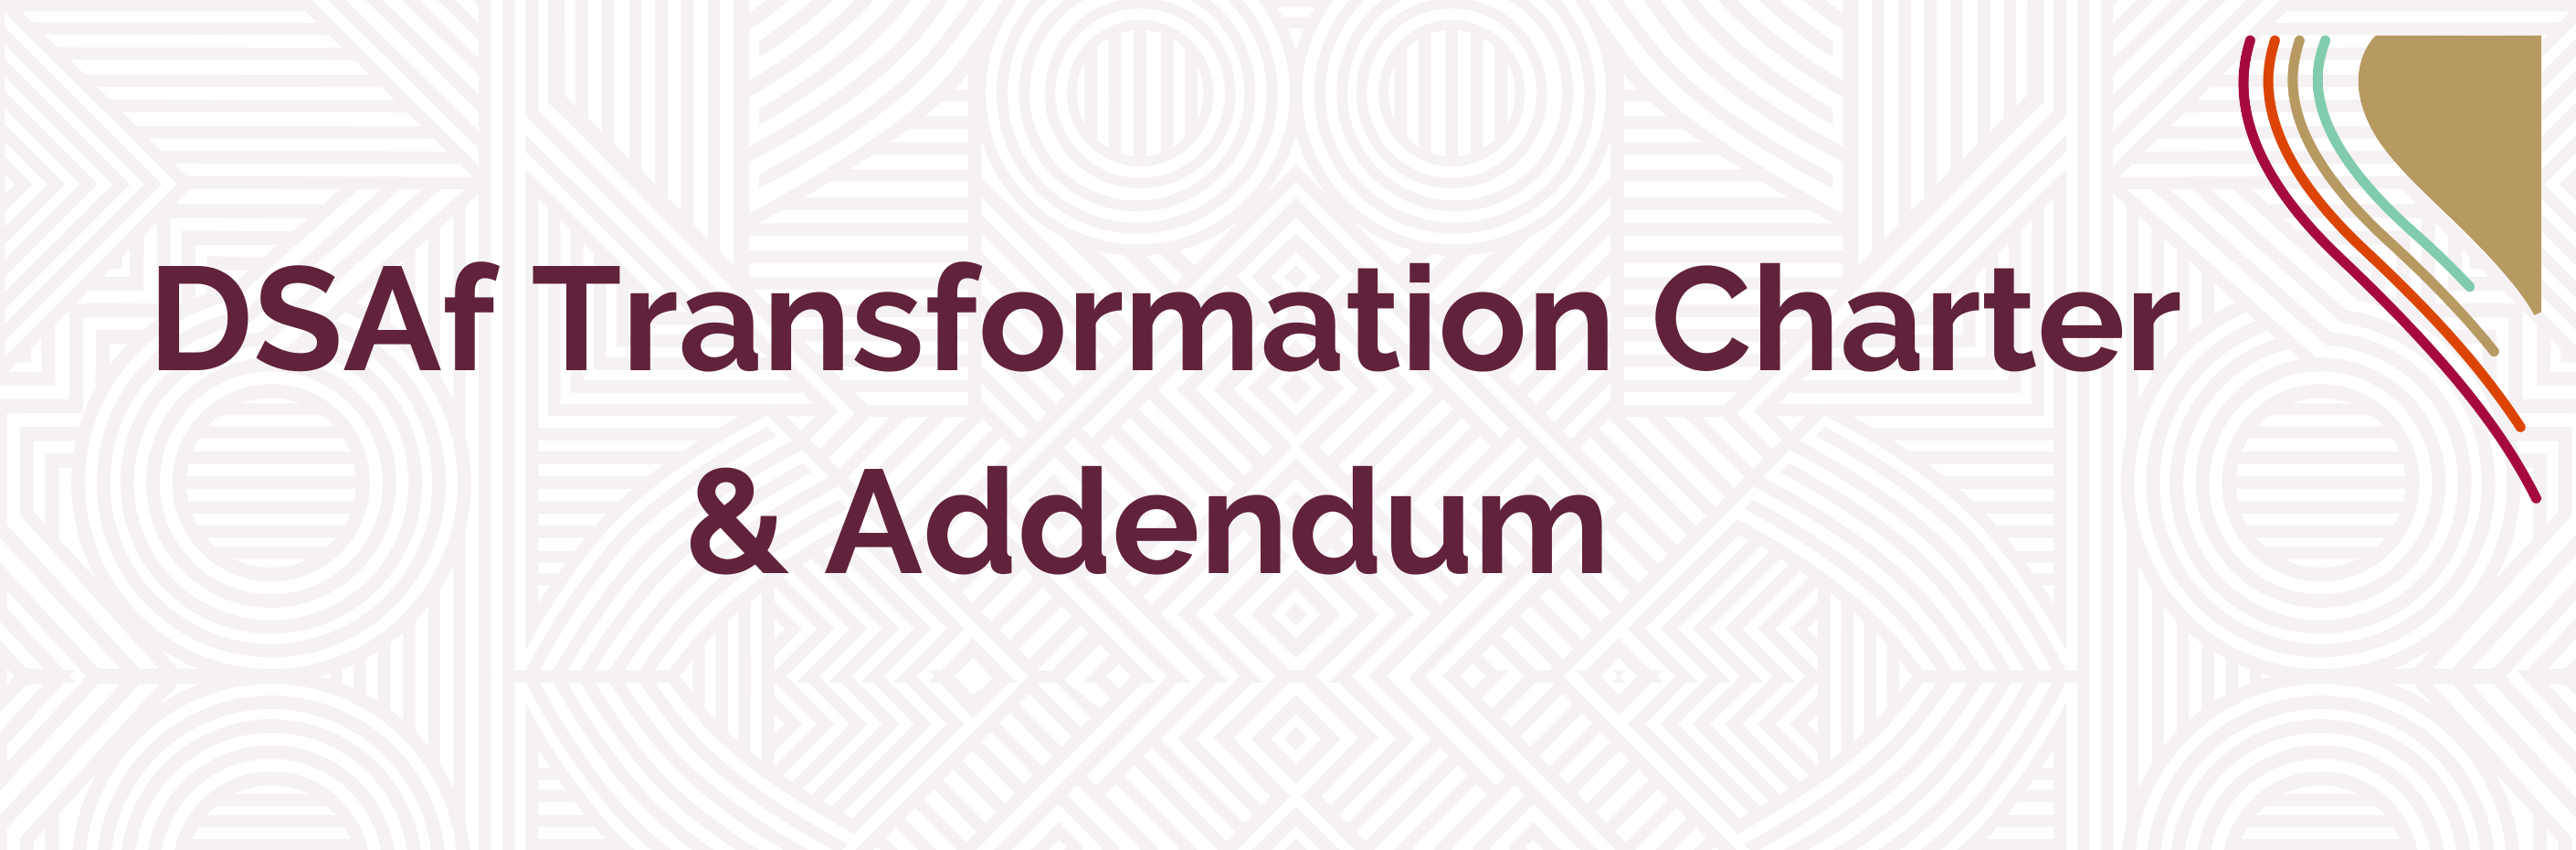 DSAf Transformation Charter and Addendum Page Header.png